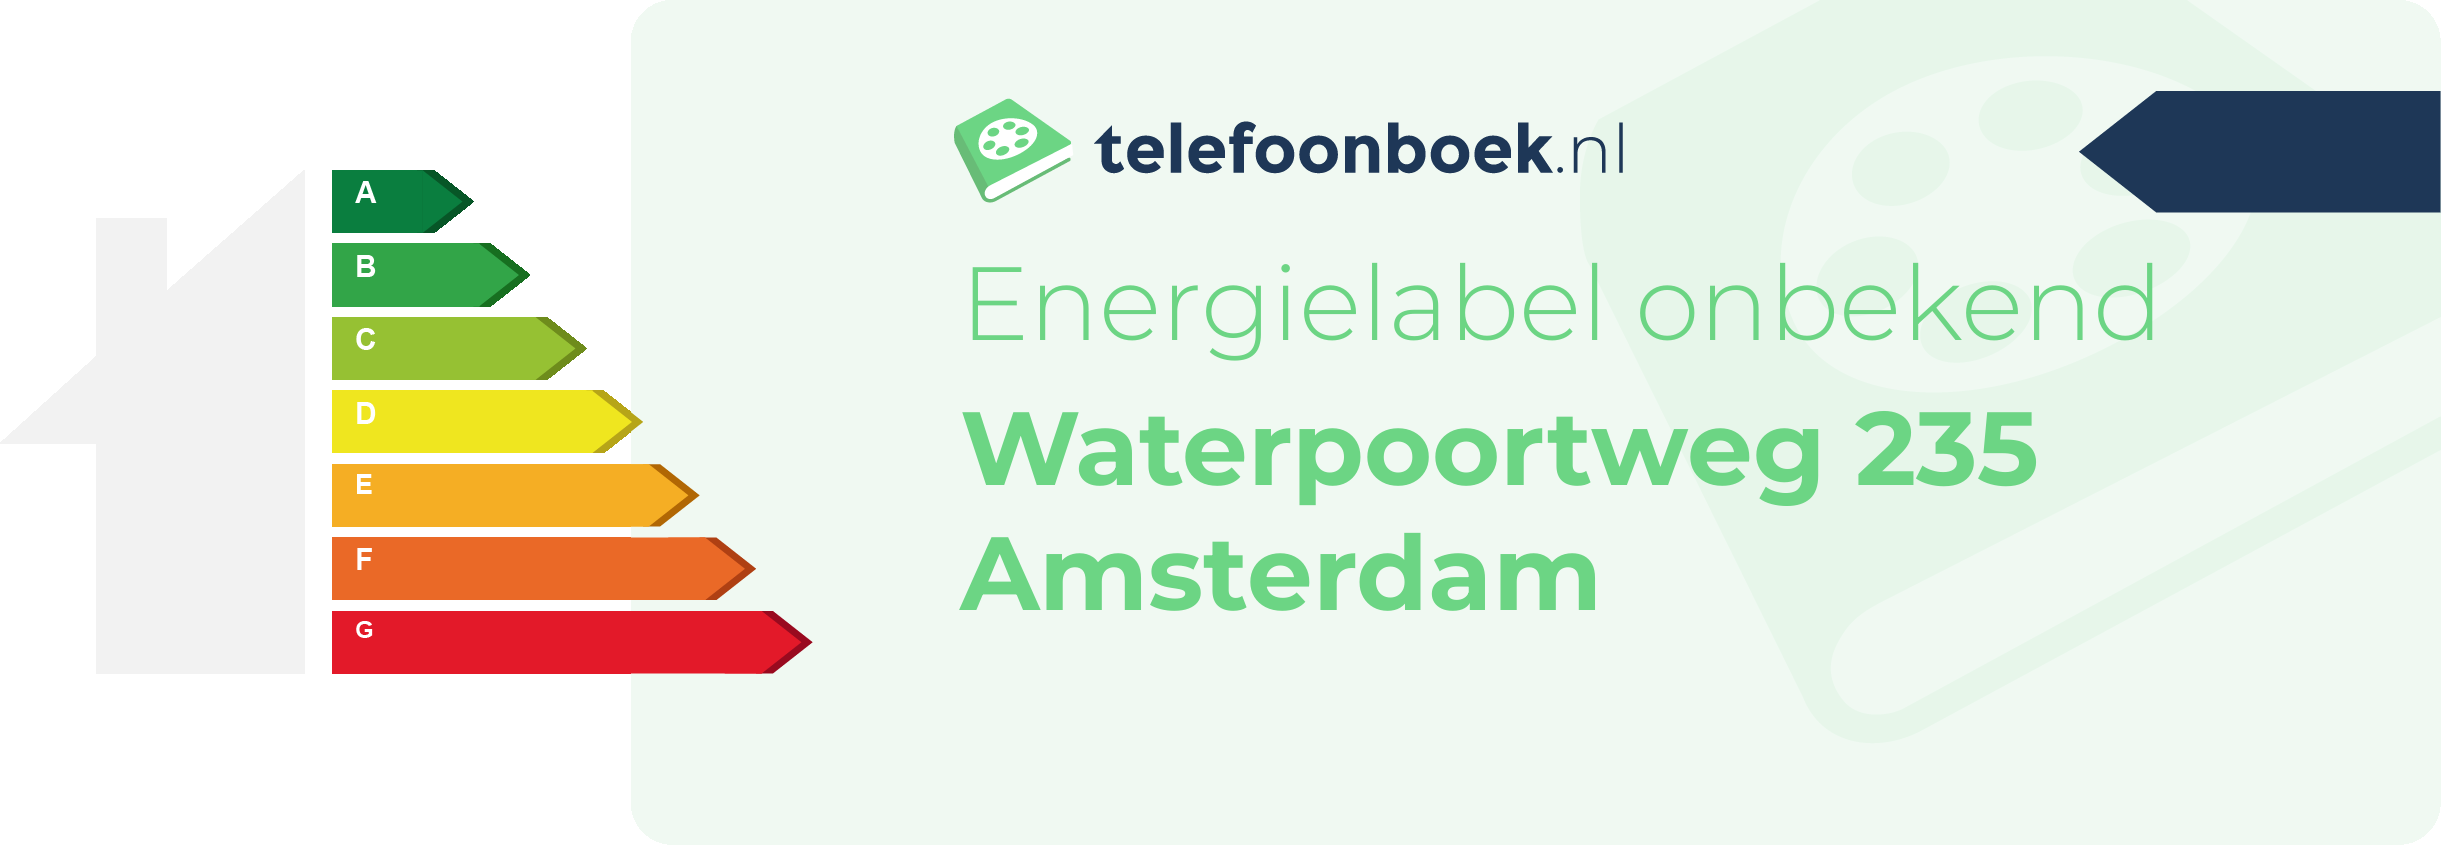 Energielabel Waterpoortweg 235 Amsterdam